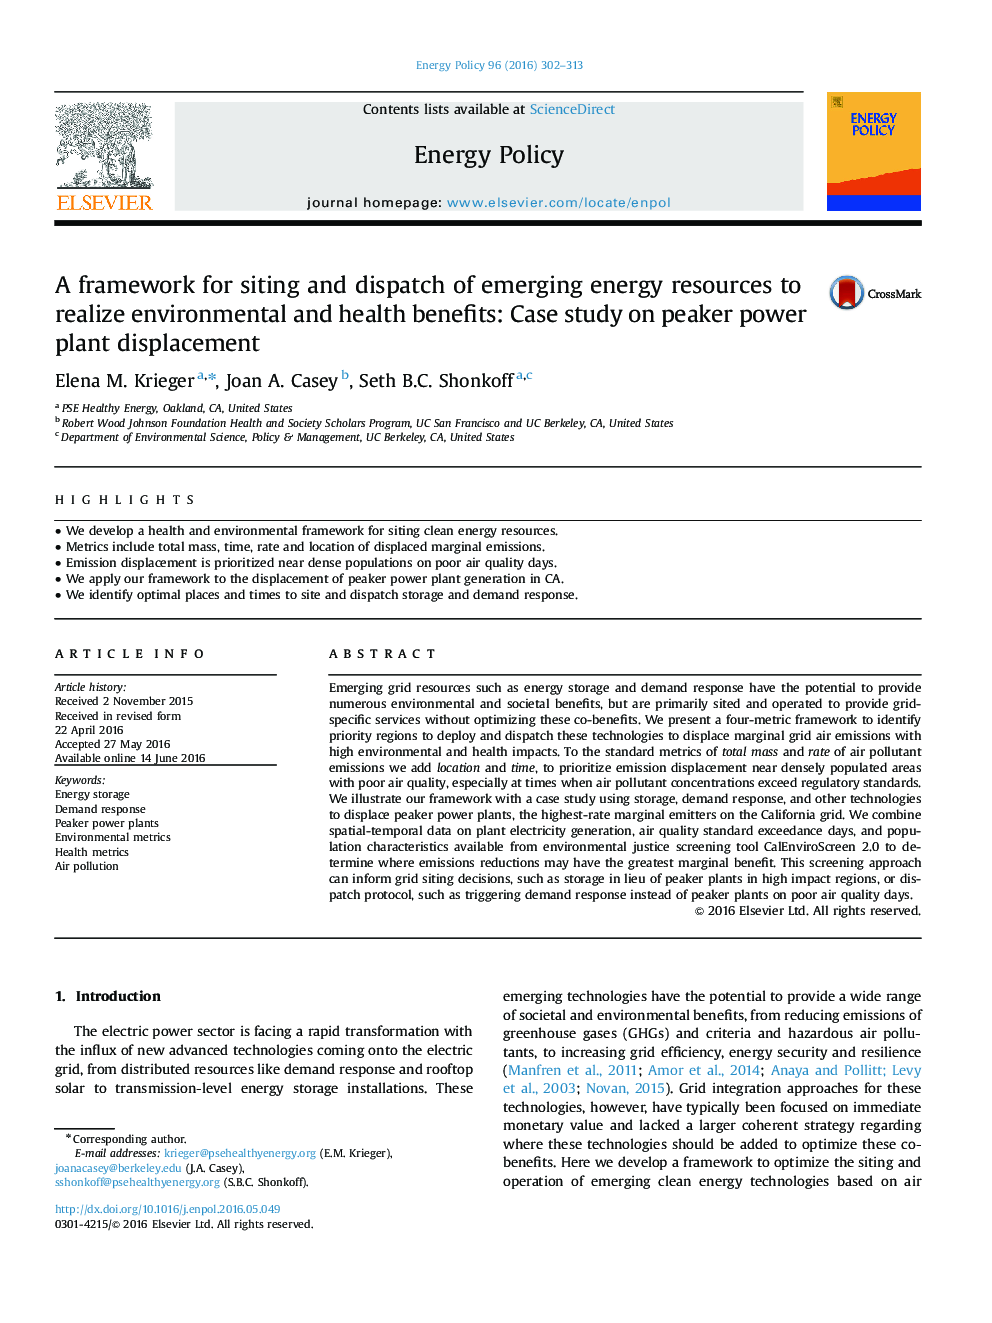 چارچوب برای قرار دادن و ارسال منابع انرژی در حال ظهور برای تحقق بخشیدن به مزایای محیط زیستی و بهداشتی: مطالعه موردی در مورد جابجایی نیروگاههای نیروگاه 